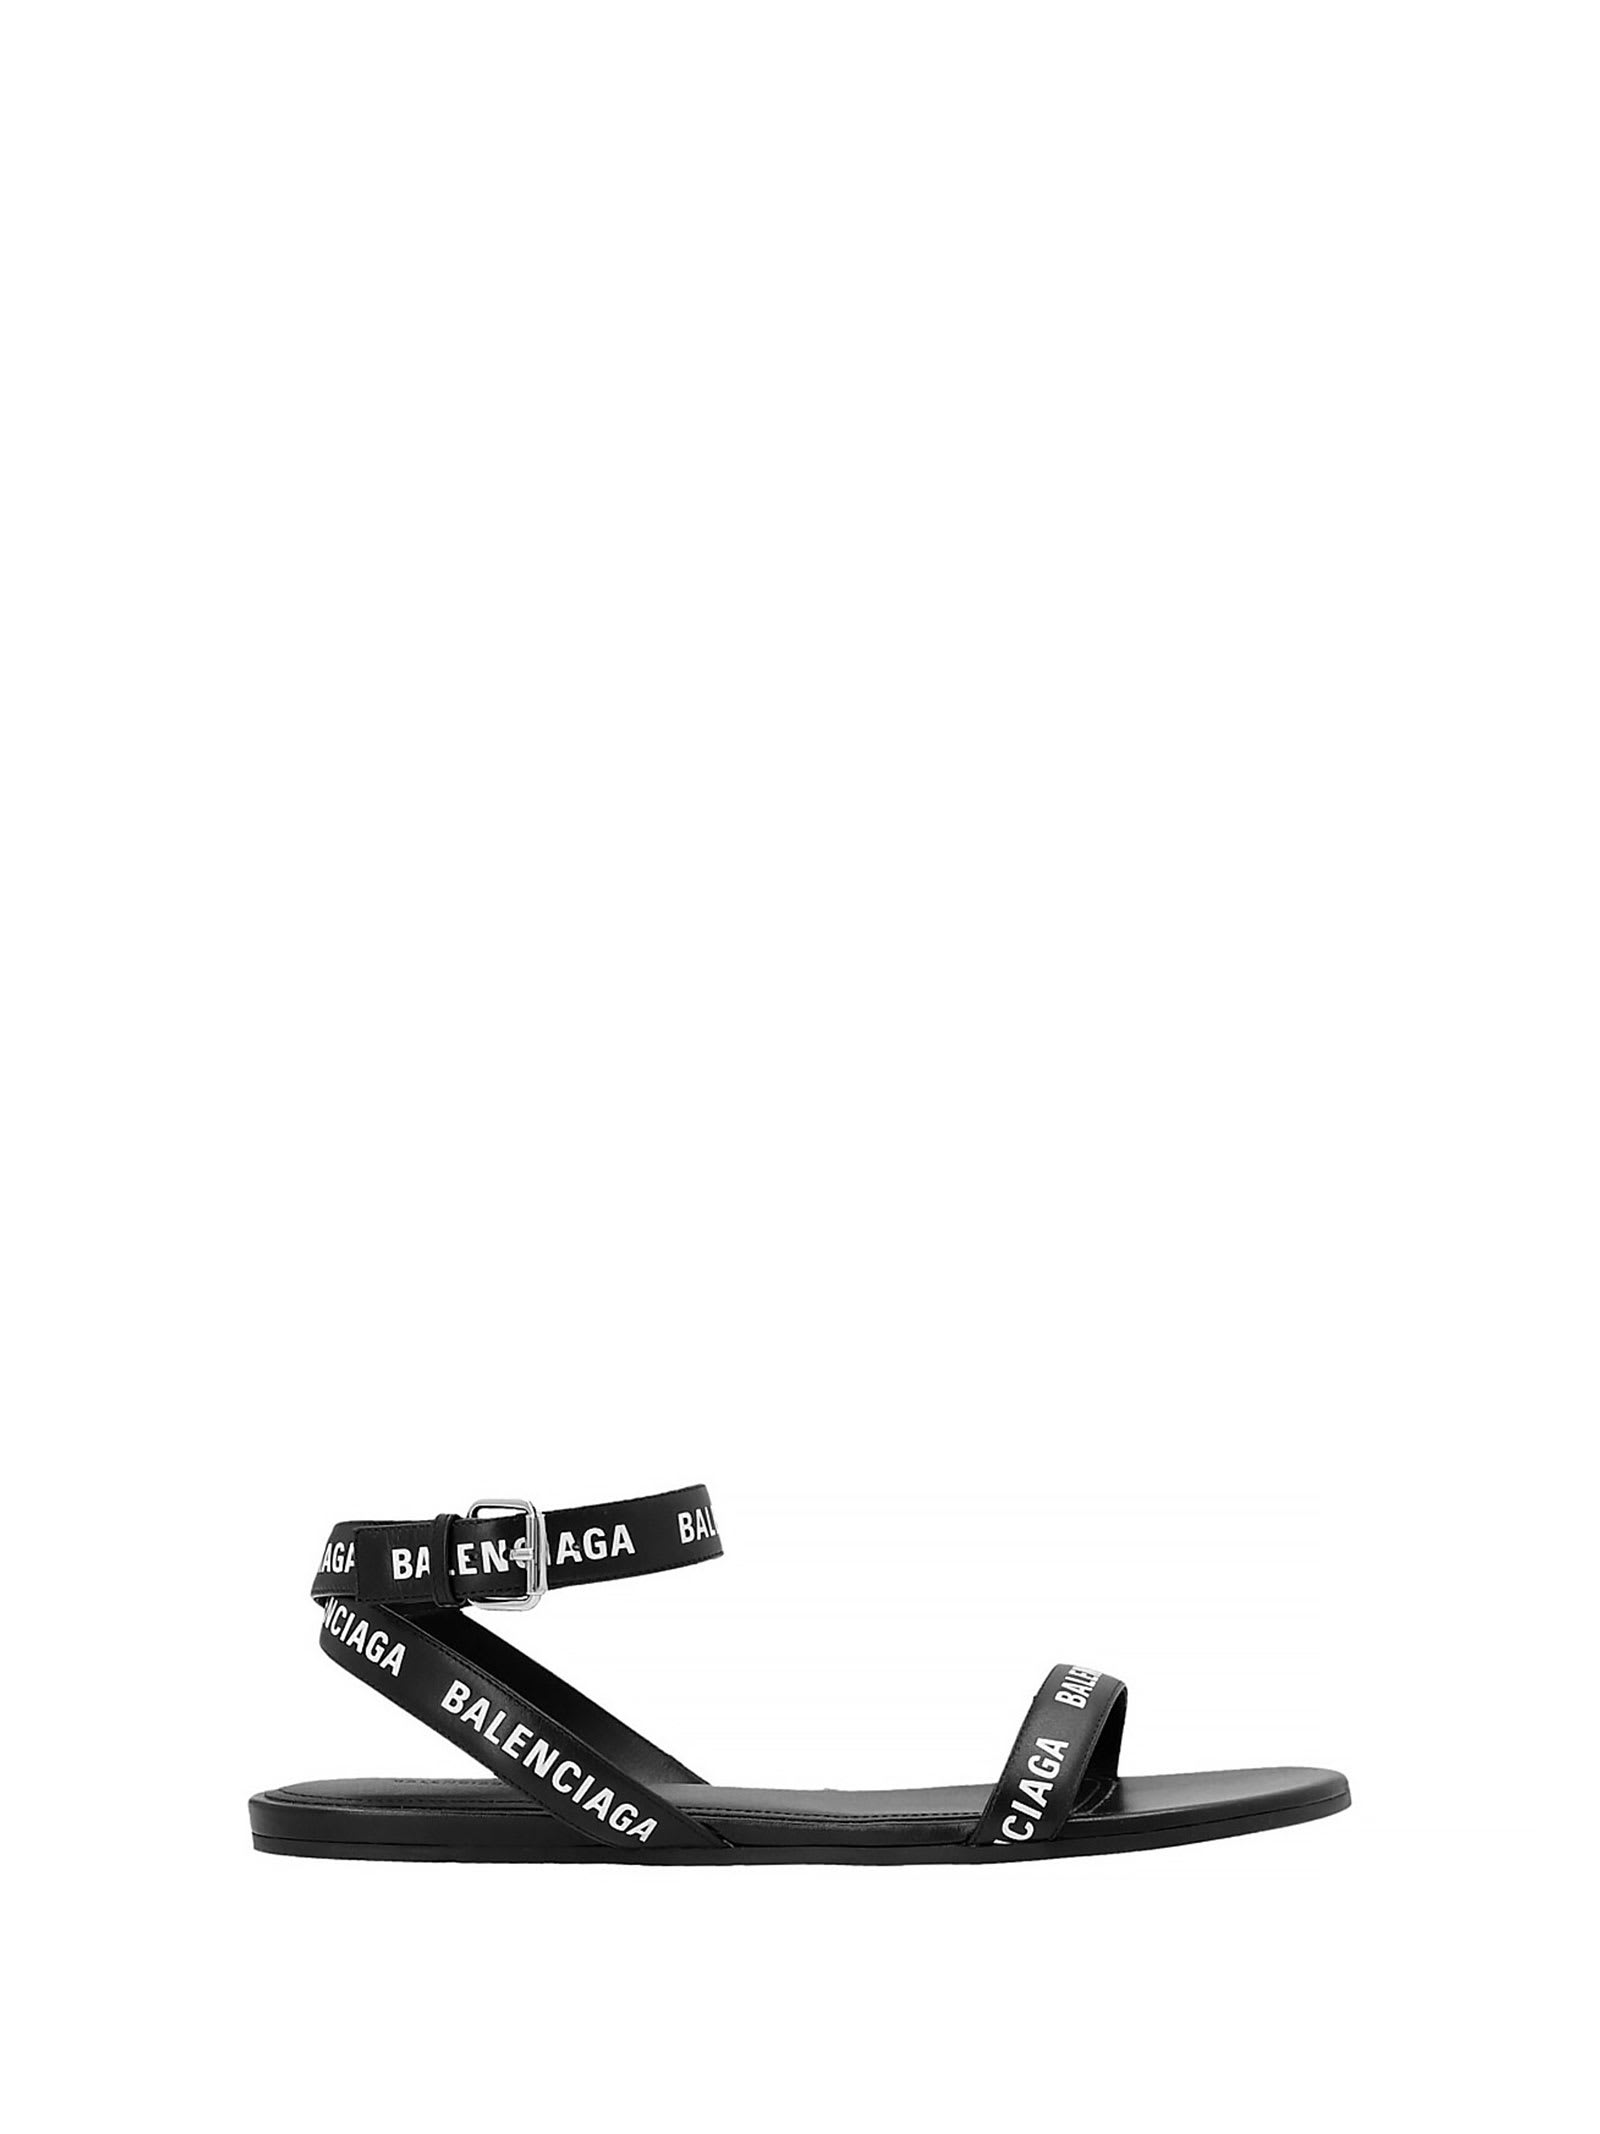 Balenciaga Flat Black Sandals